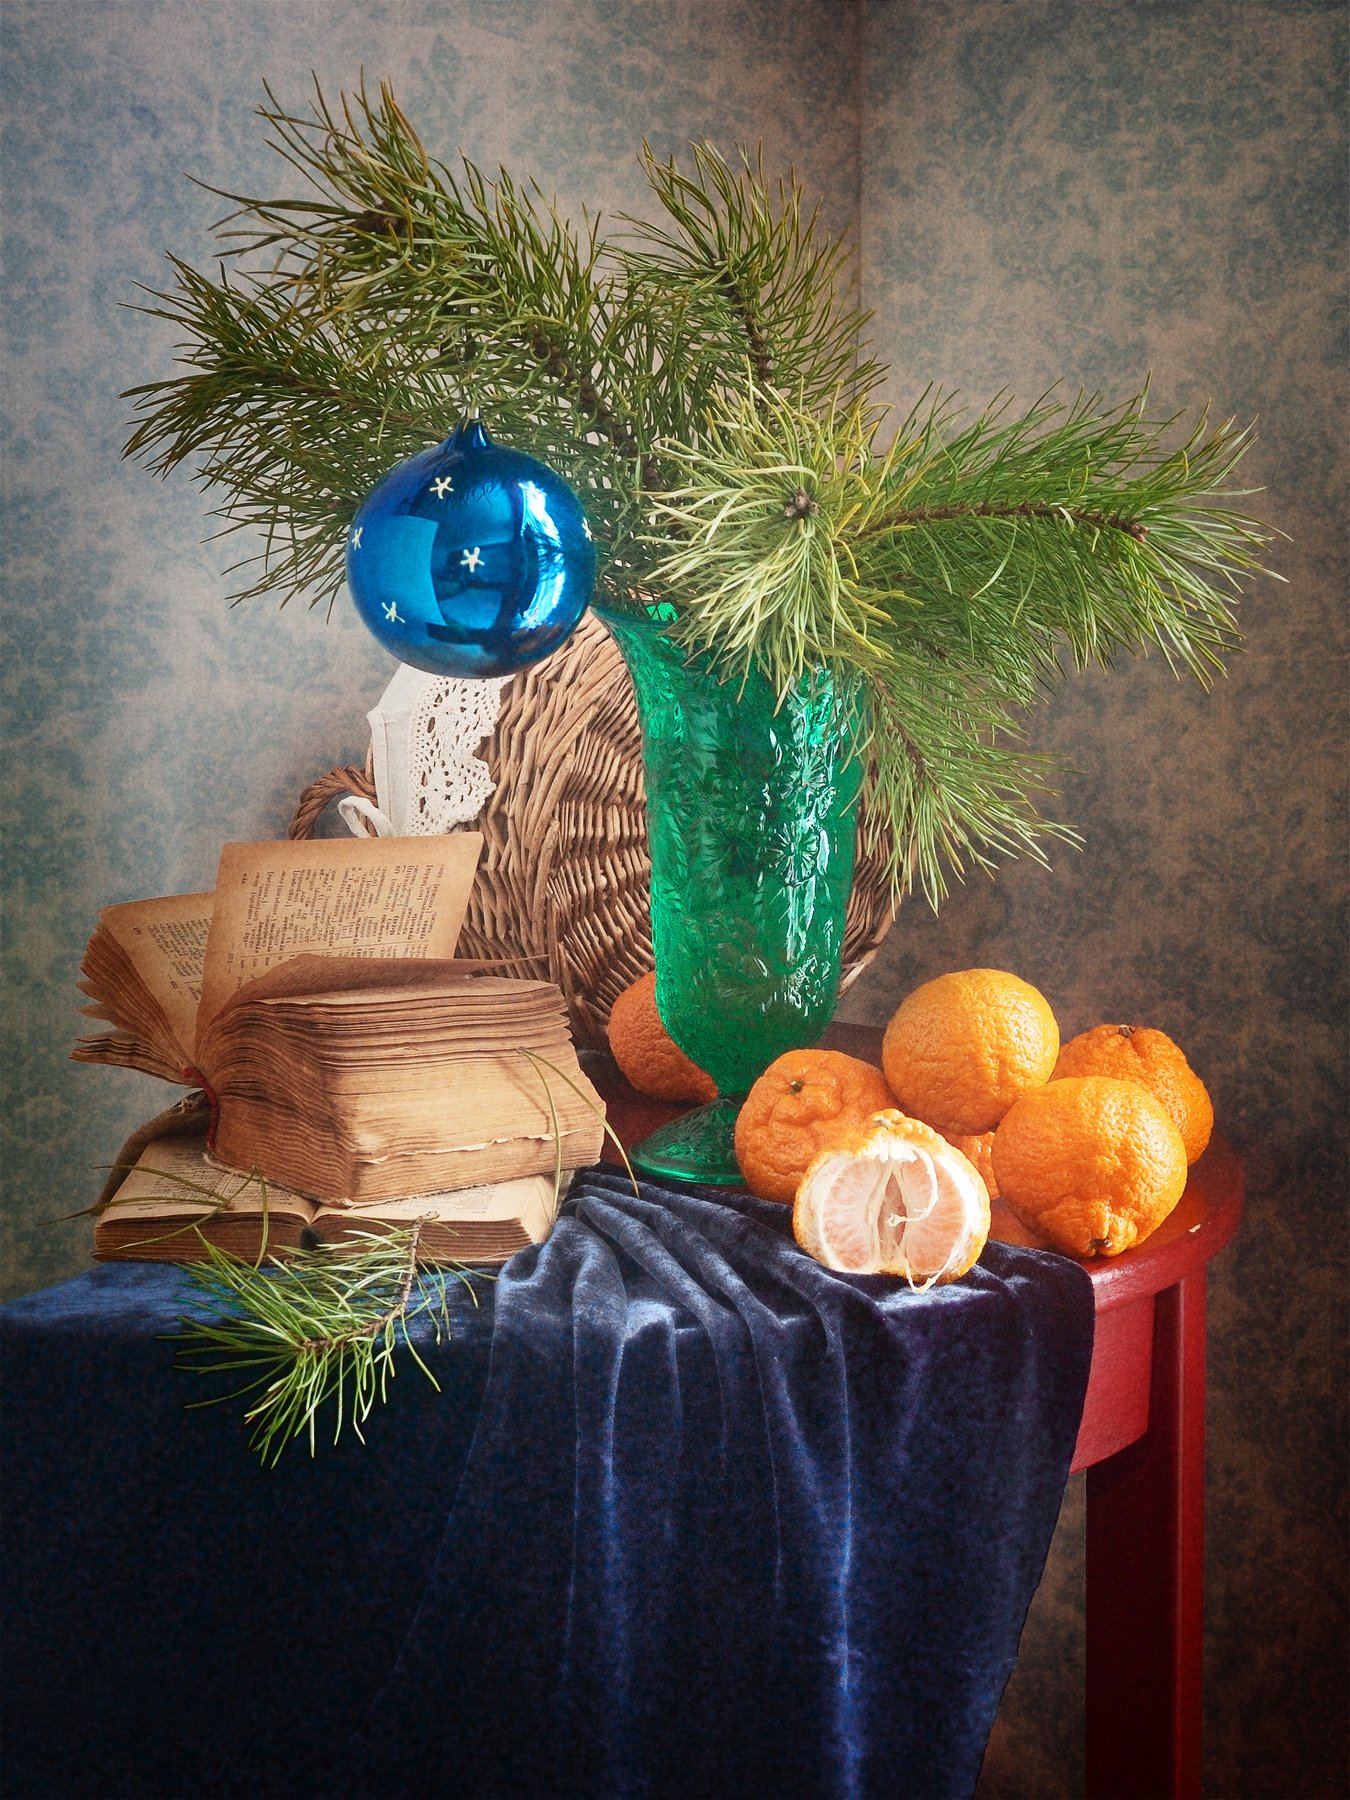 Праздничный, натюрморт, рождественский, букет, сосновый, зеленый, ваза, елочный, стеклянный, шар, свежий, мандарины, старый, книг,а темно-синий, драпировка, домашний, интерьер, оранжевый, Николай Панов